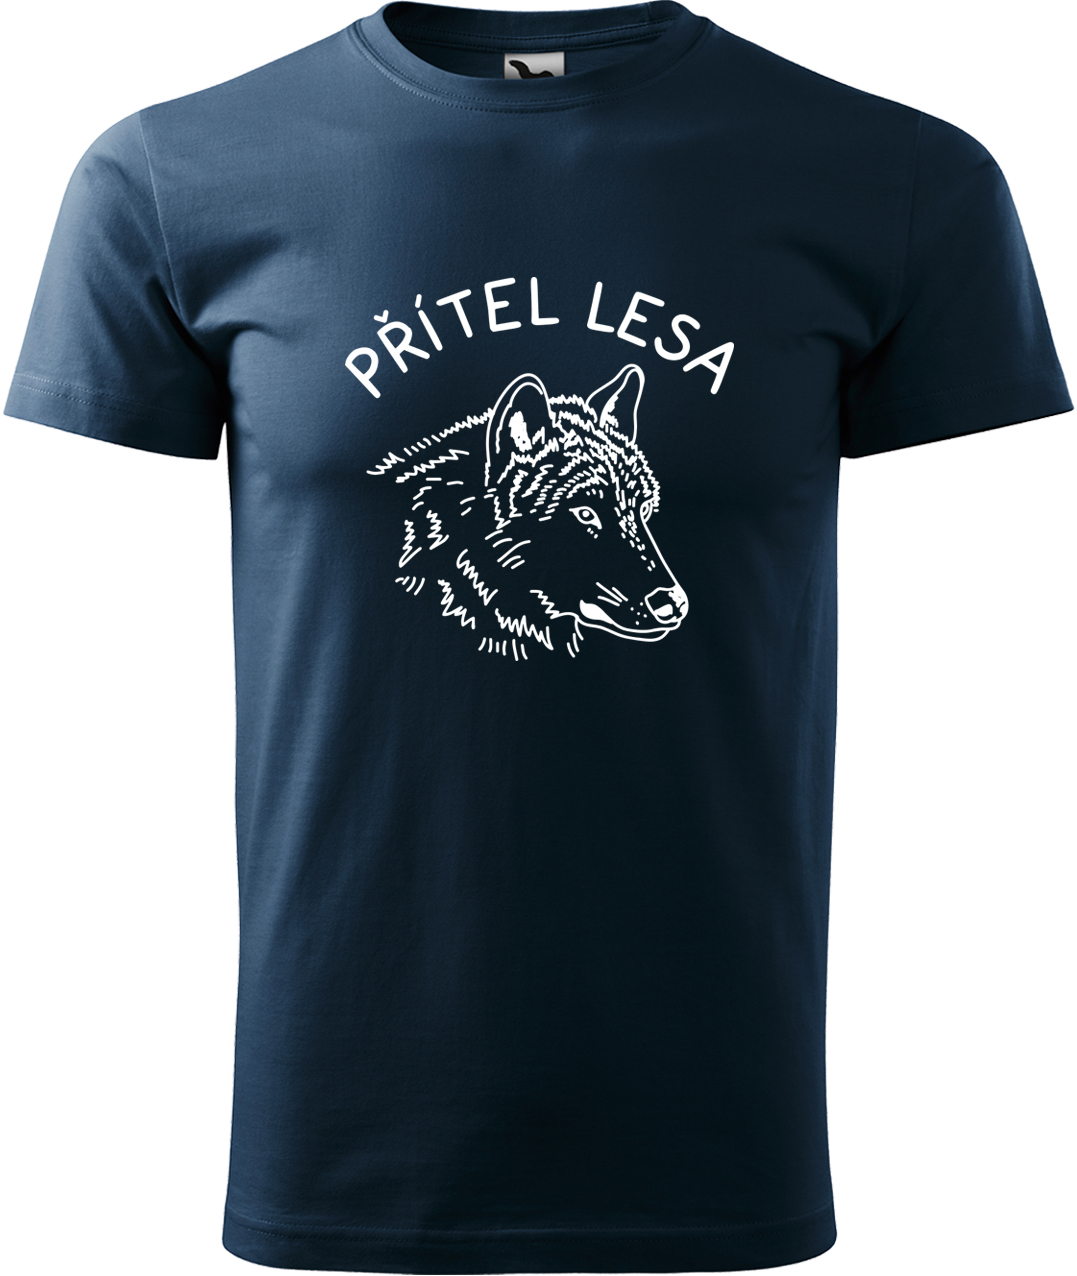 Pánské tričko s vlkem - Přítel lesa Velikost: L, Barva: Námořní modrá (02), Střih: pánský